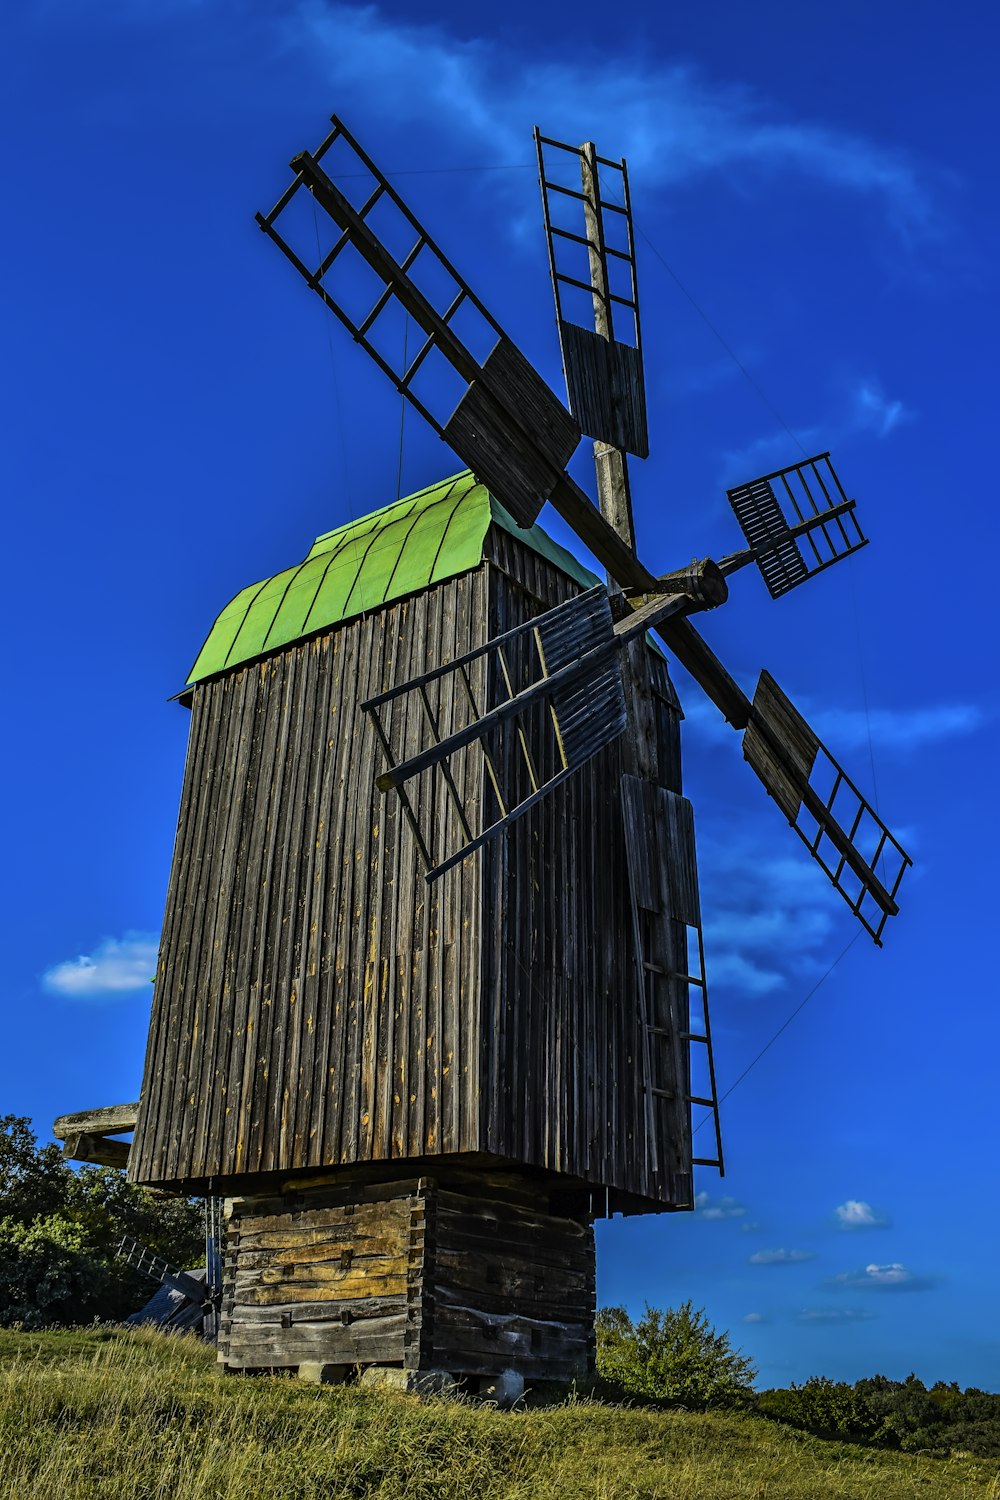 eine alte hölzerne Windmühle mit begrüntem Dach